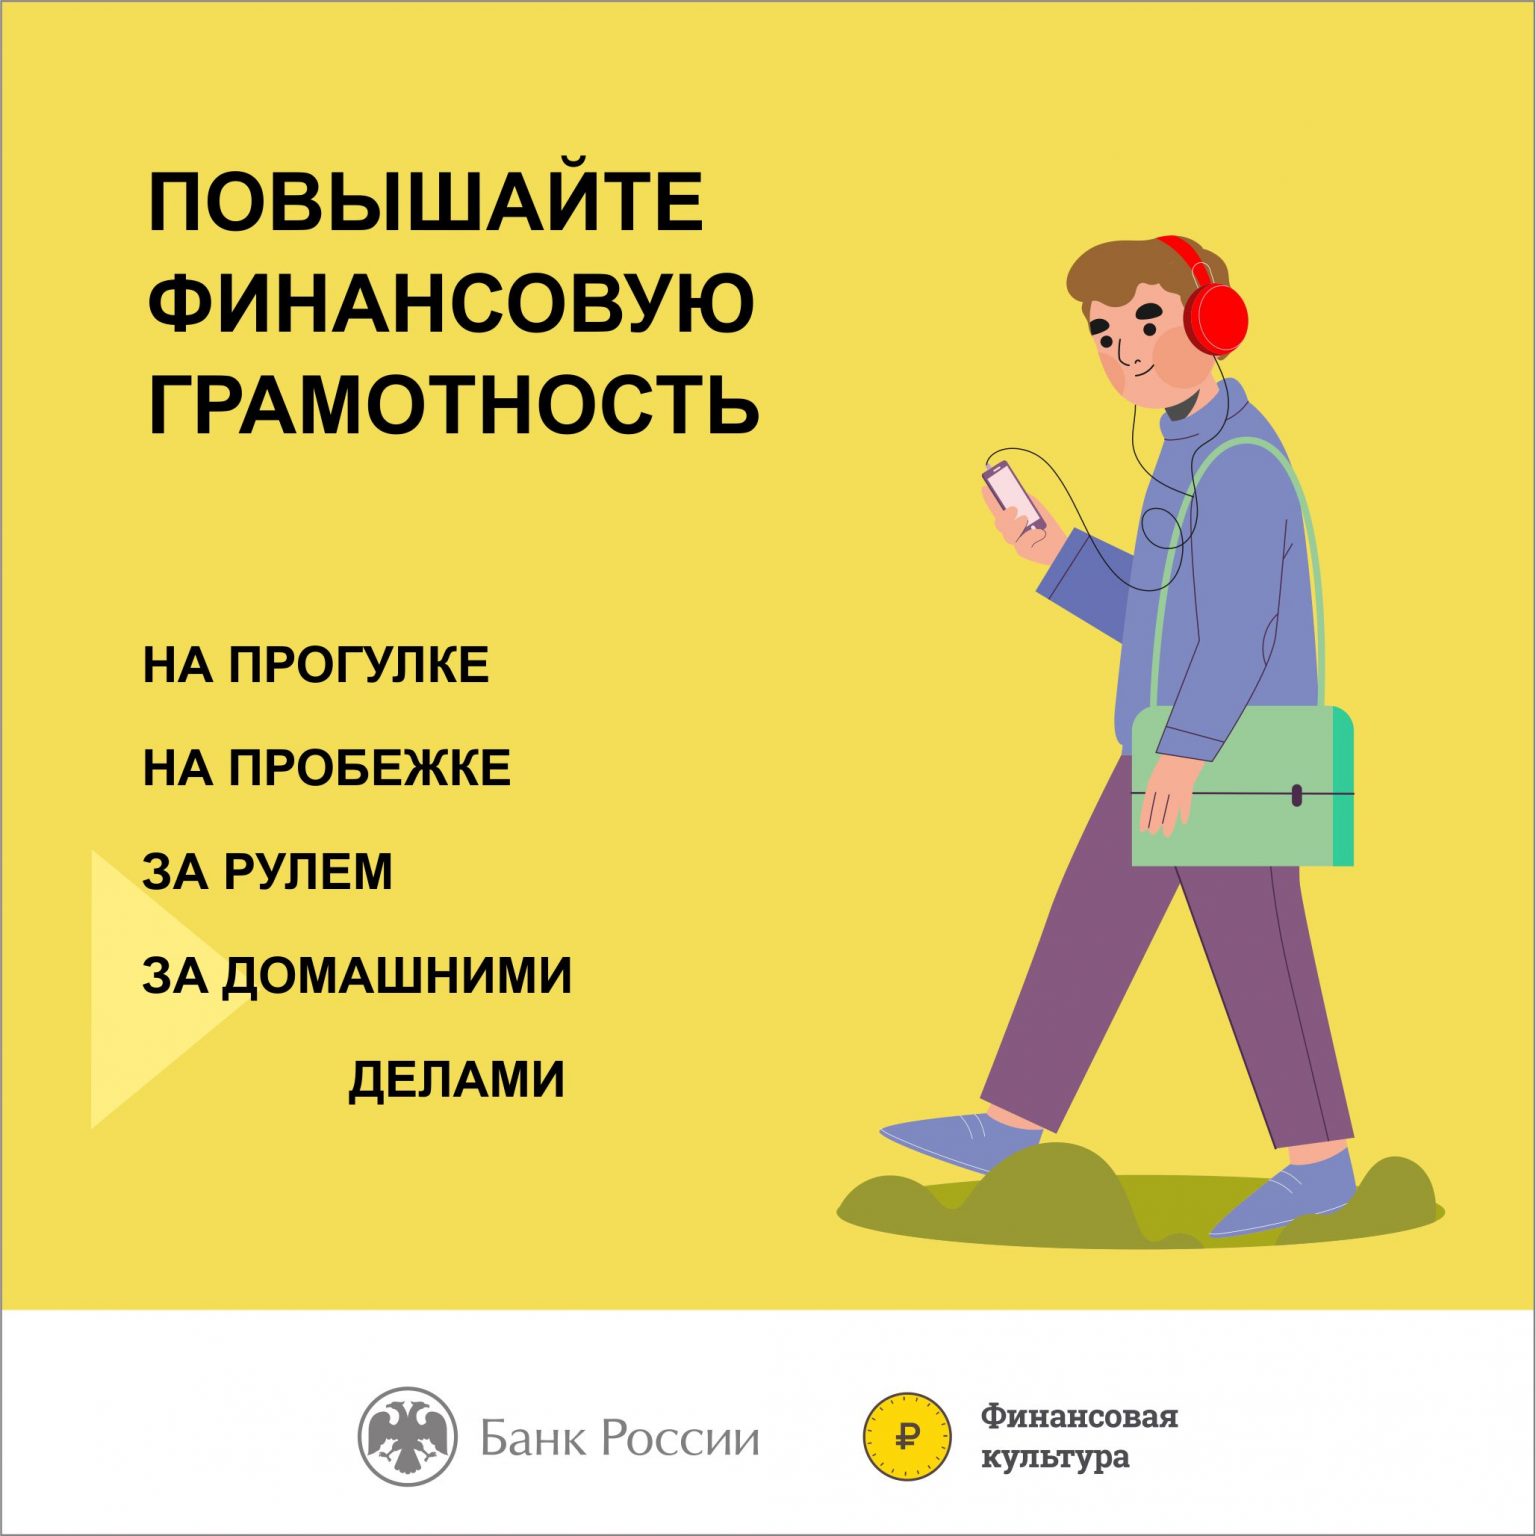 В Севастополе проходят онлайн-уроки по финансовой грамотности для школьников